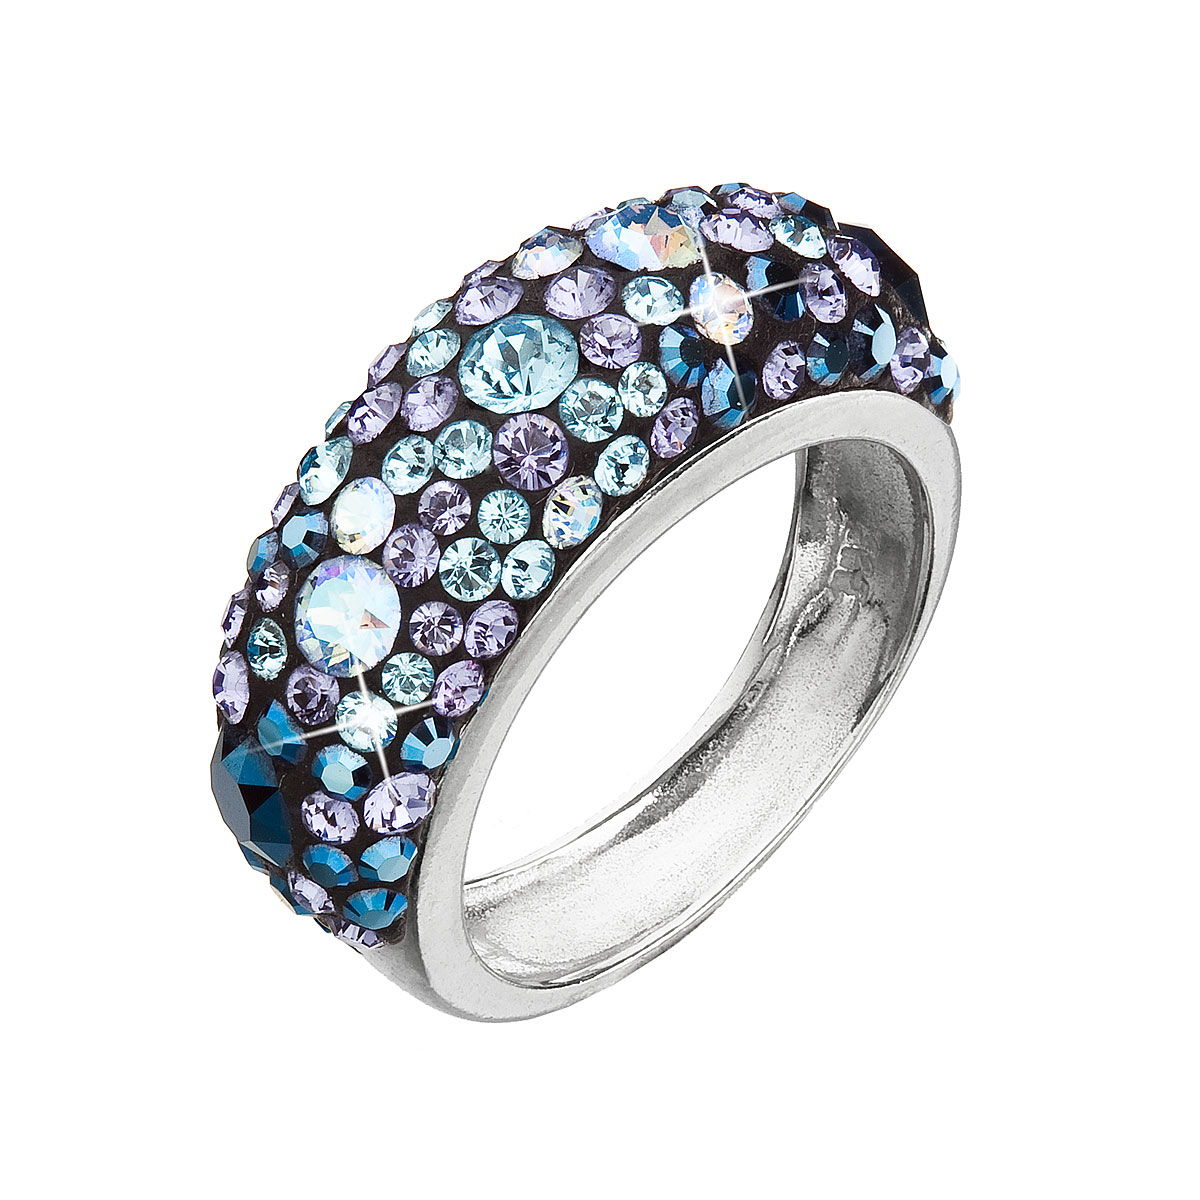 Strieborný prsteň s krištáľmi Swarovski modrý 35031.3 blue style